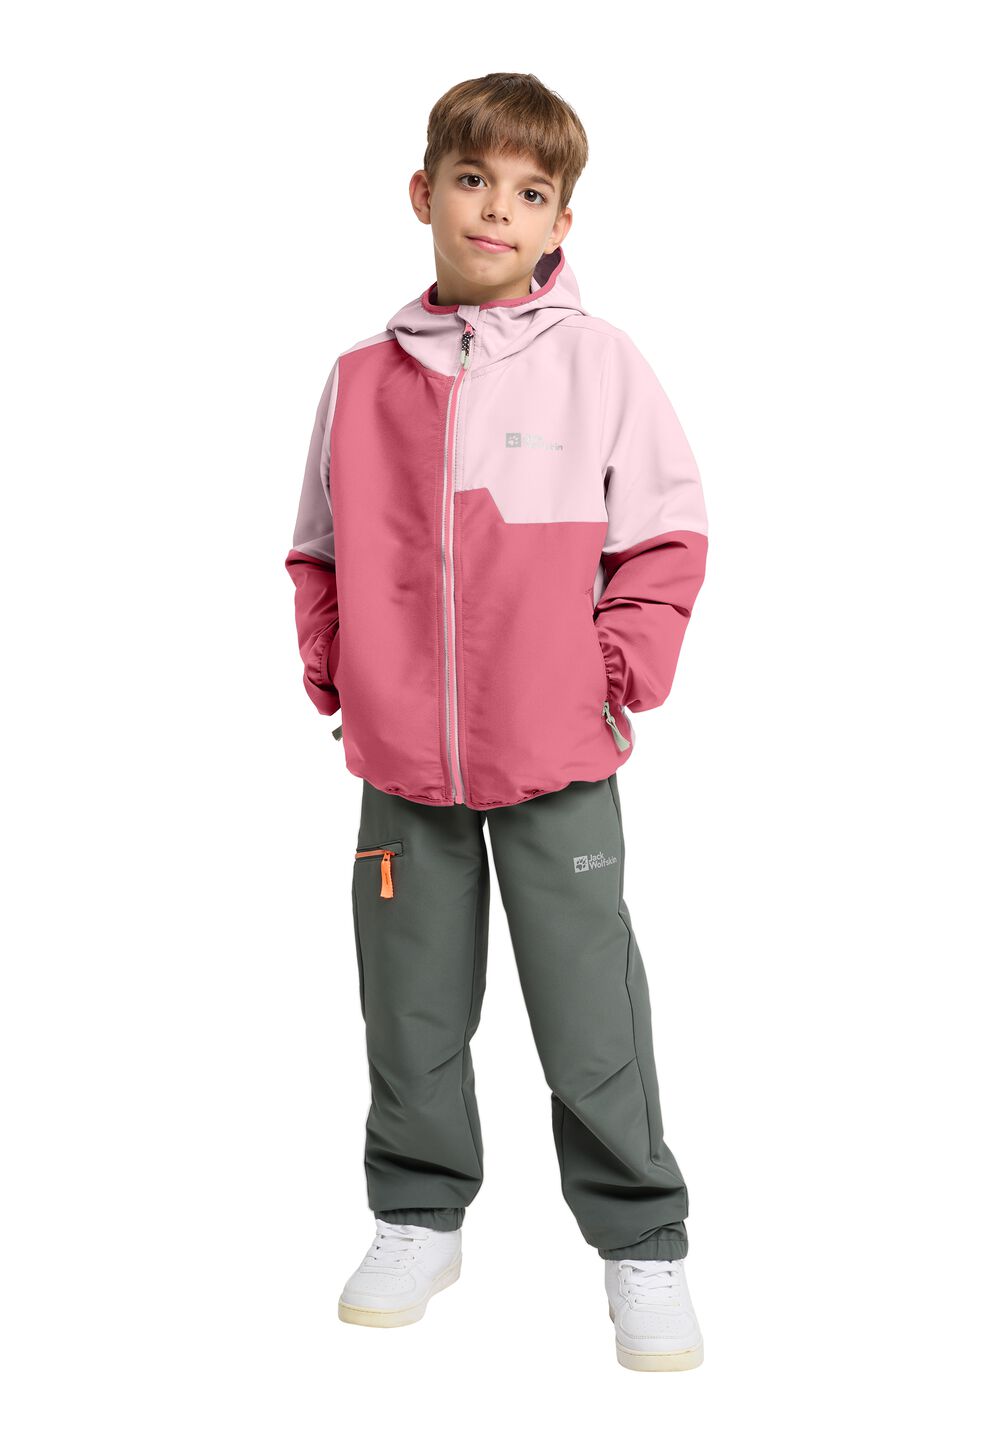 Jack Wolfskin Turbulence Hooded Jacket Kids Softshelljack Kinderen 176 soft pink soft pink